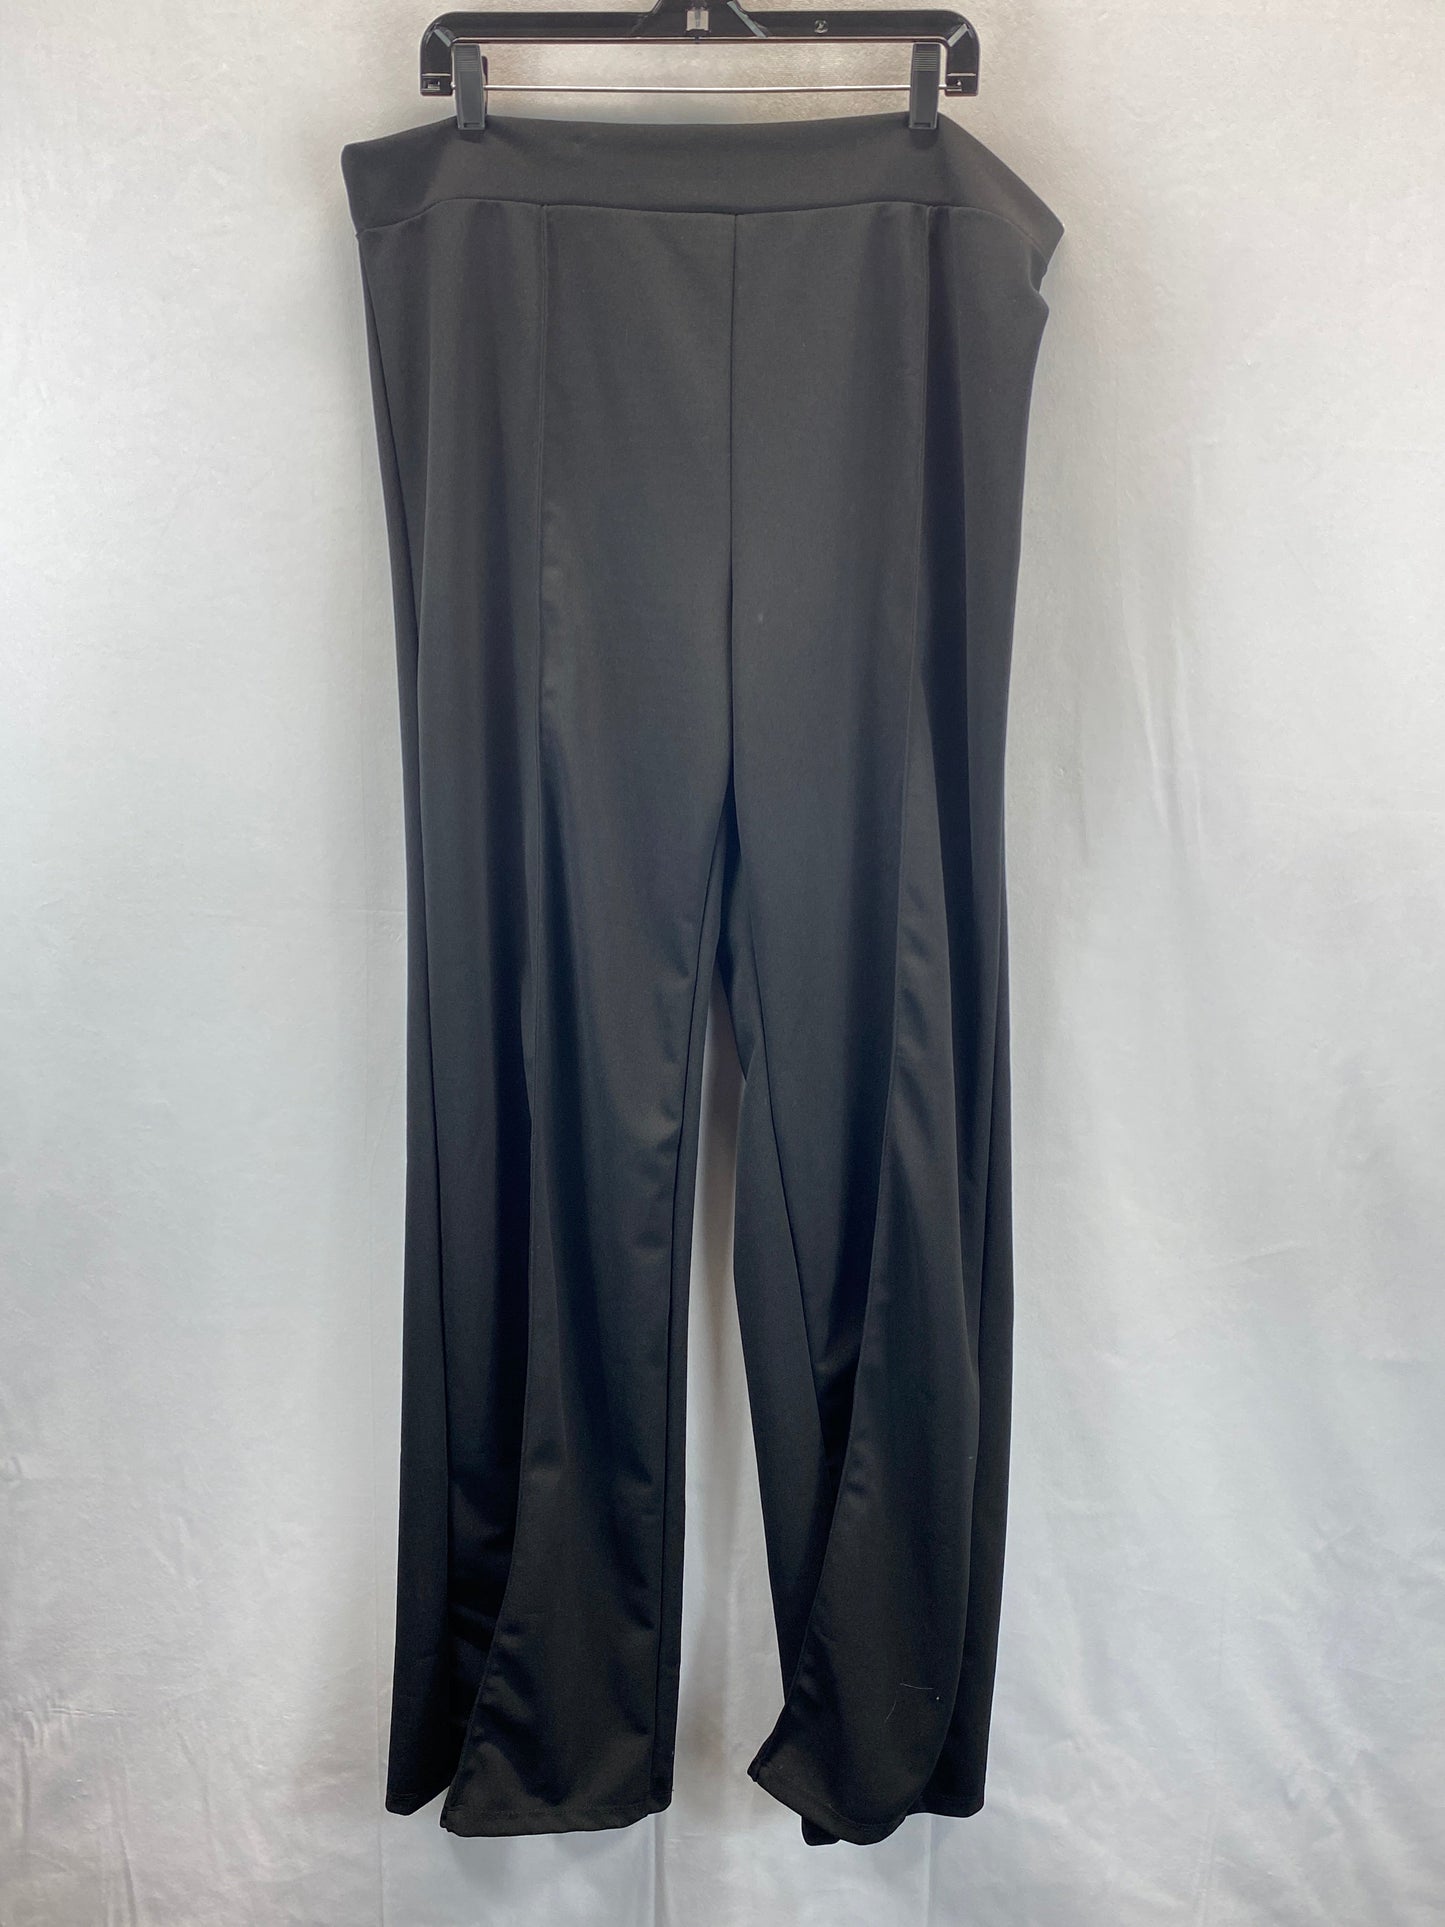 Black Pants Other Fashion Nova, Size 3x